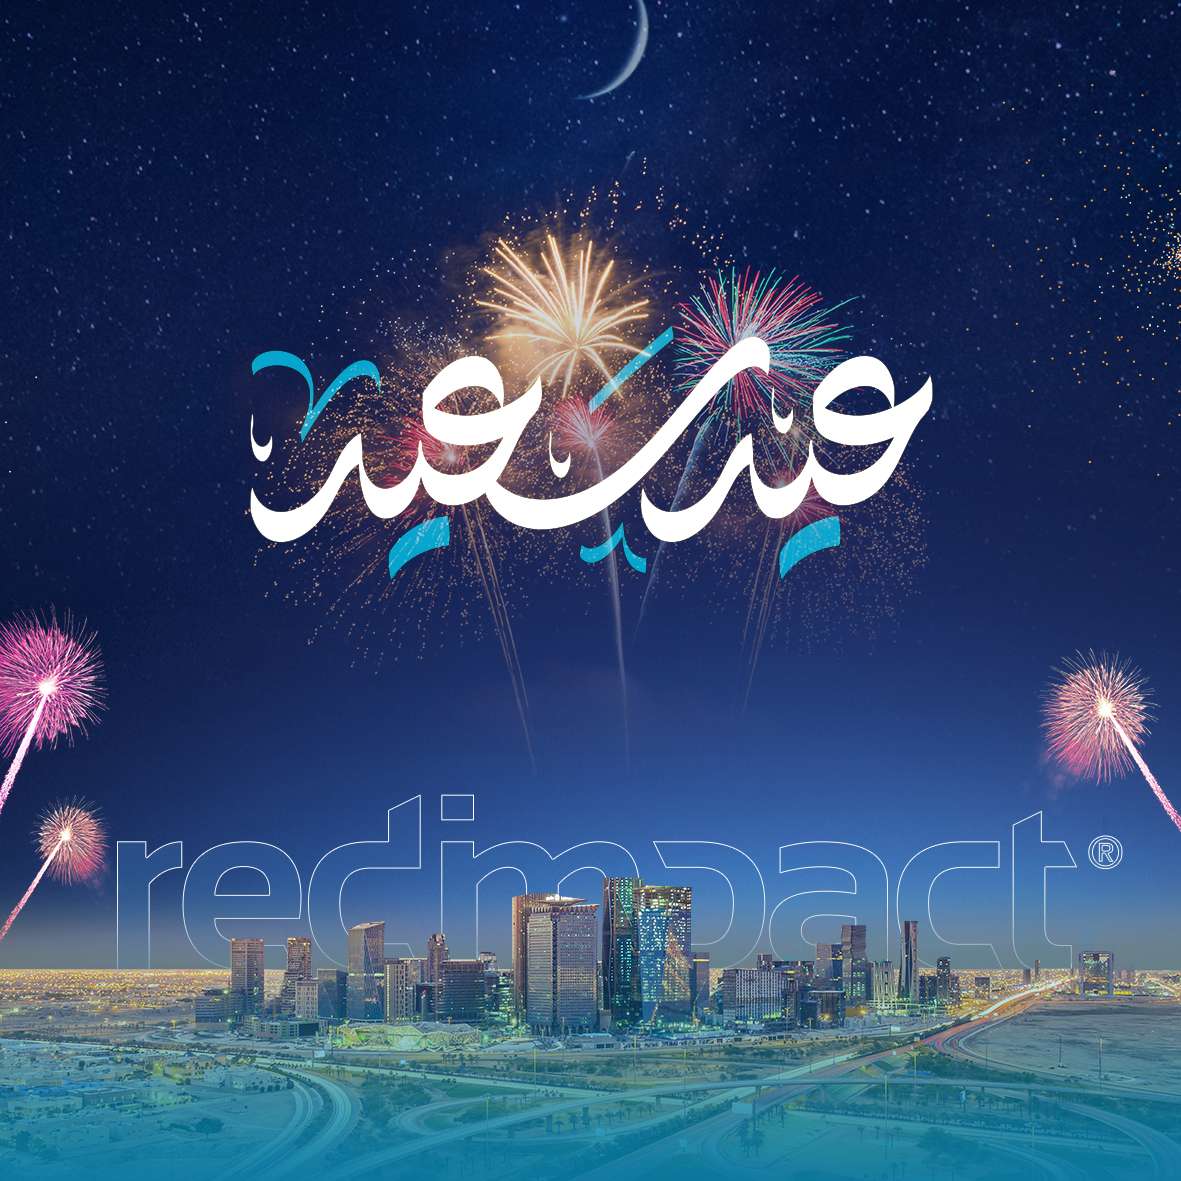 Eid Mubarak puzzle online